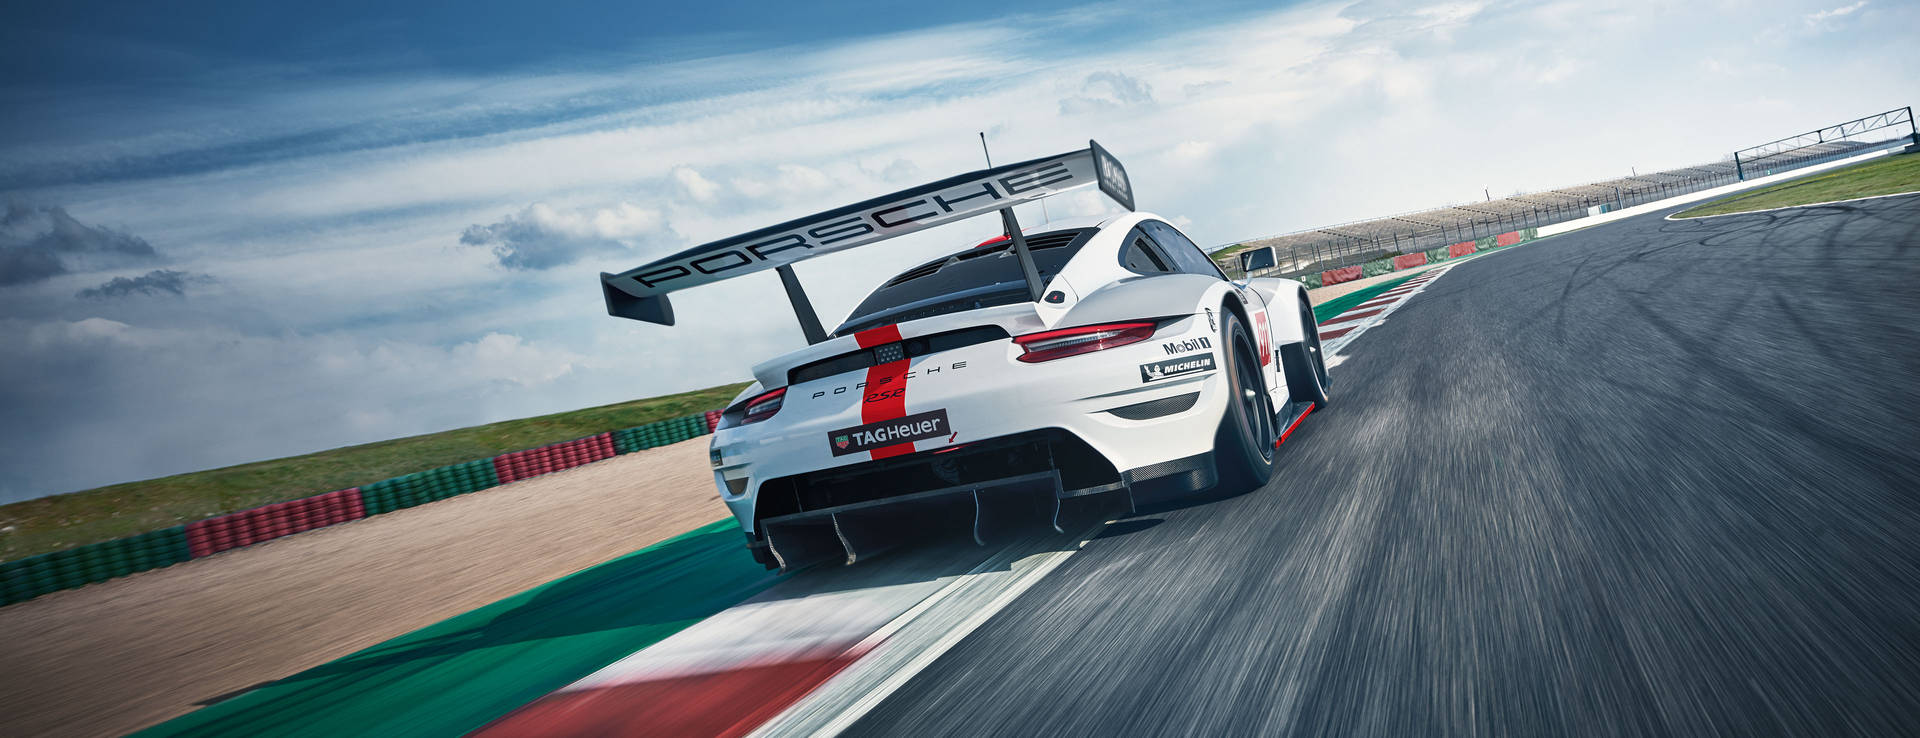 Porsche 911 Gt3 Rsr Back Angle For Motorsport Wallpaper